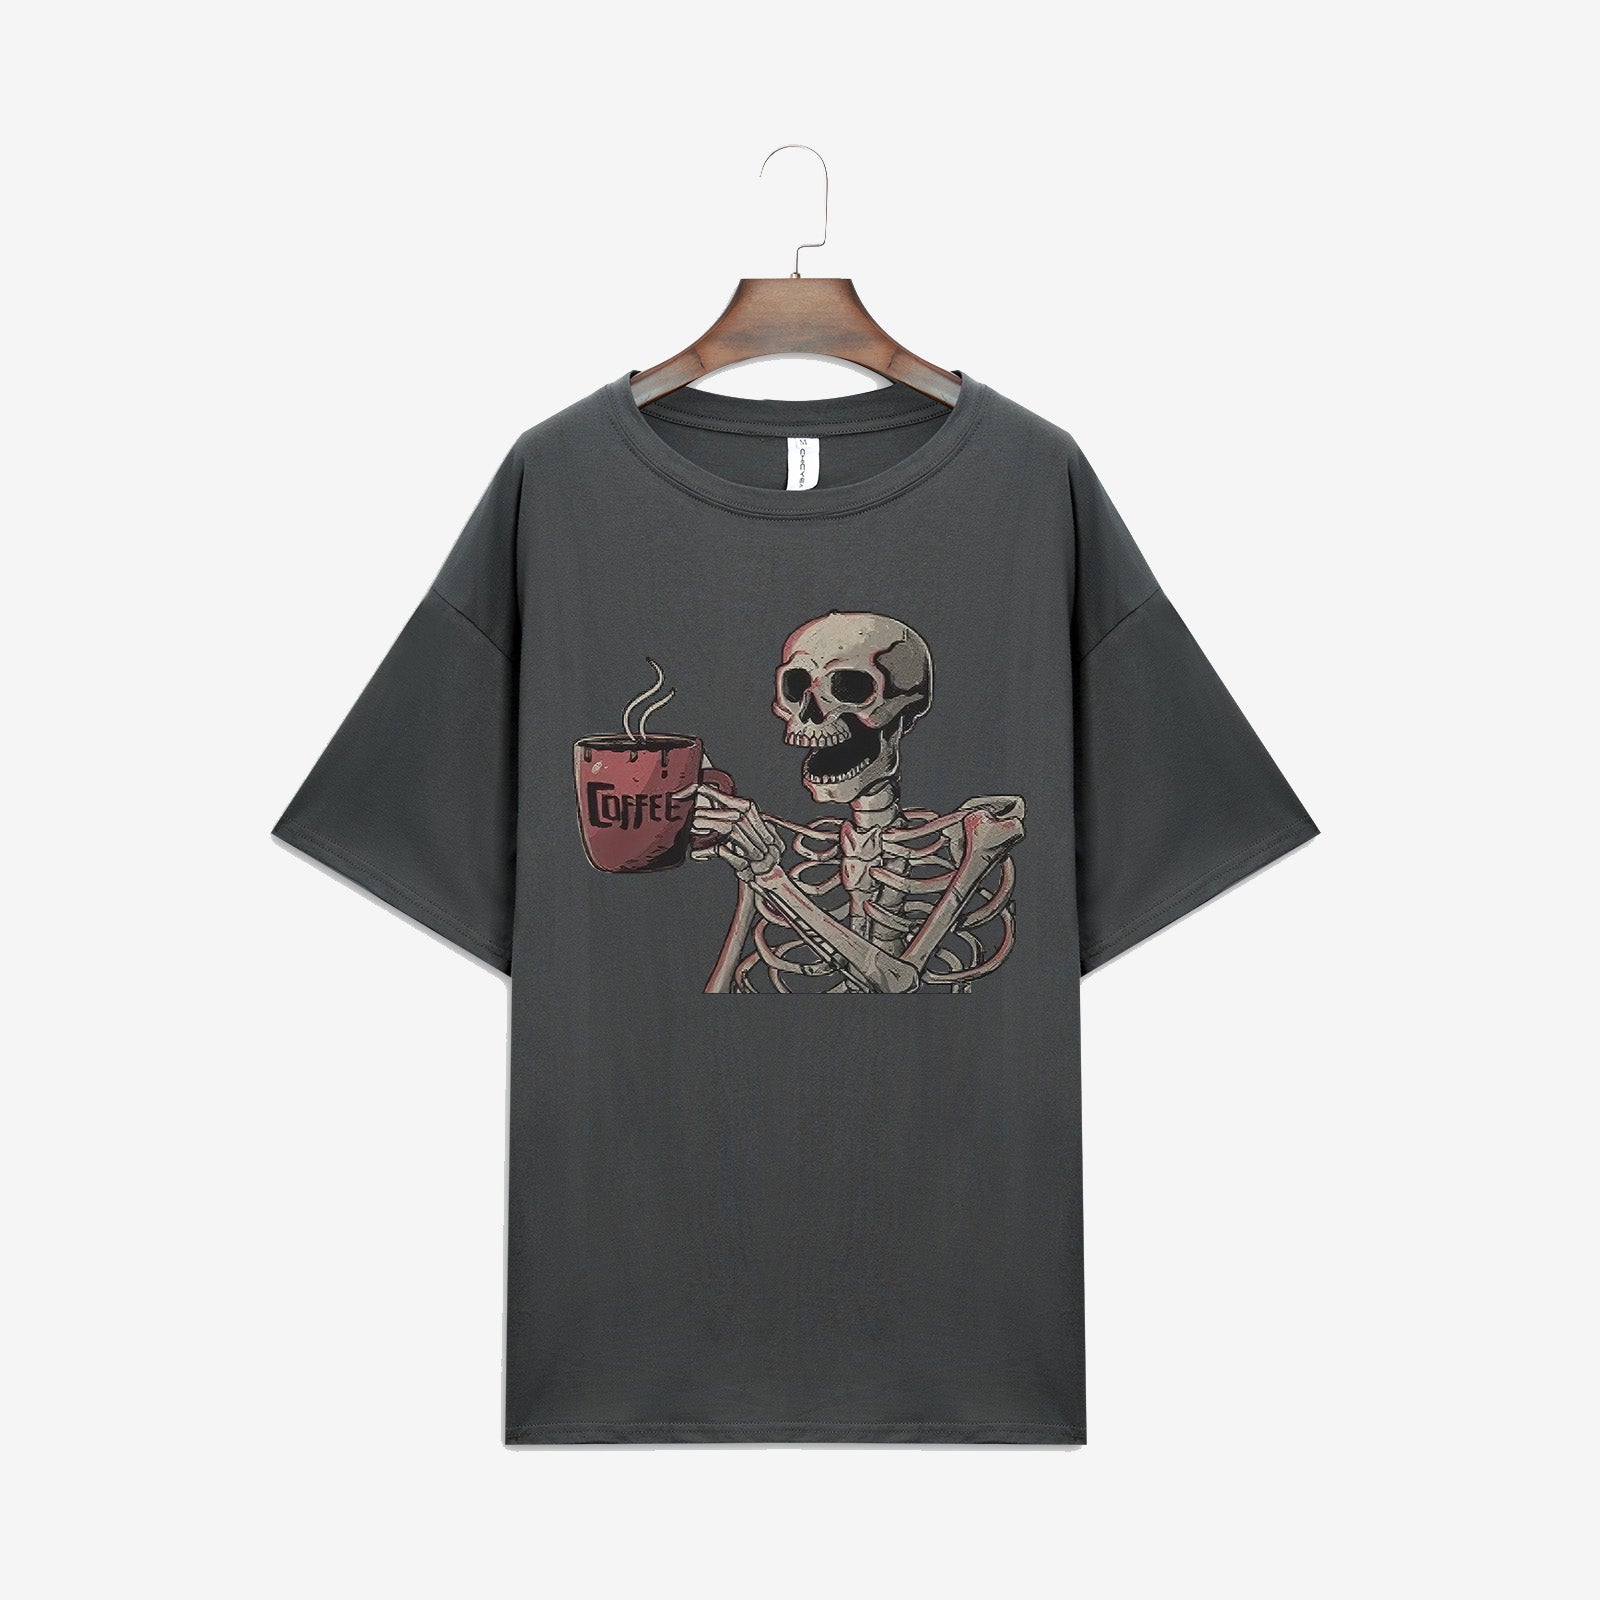 Minnieskull Casual Skull Coffee Print T-Shirt - chicyea